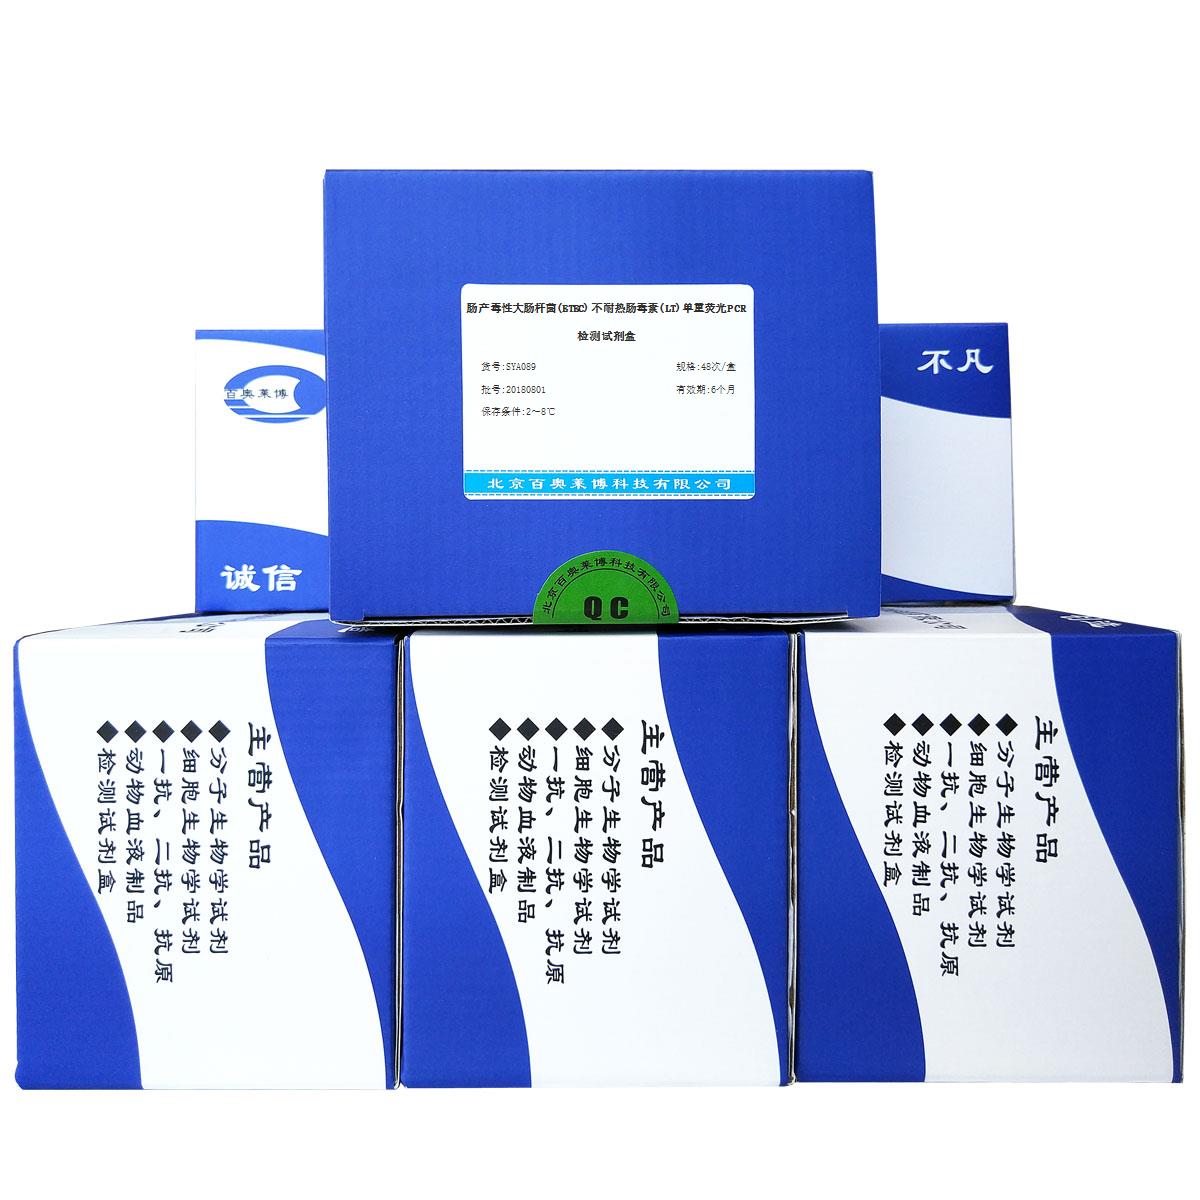 肠产毒性大肠杆菌(ETEC)不耐热肠毒素(LT)单重荧光PCR检测试剂盒